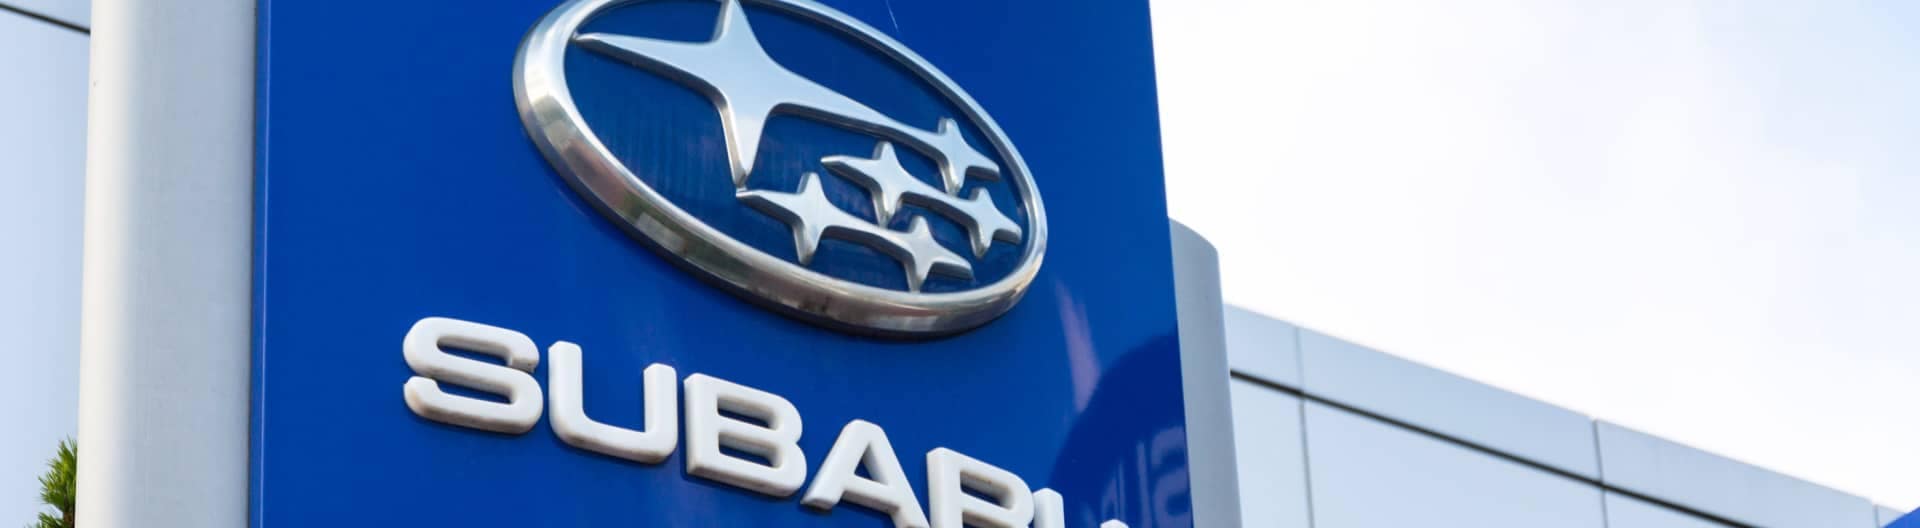 Close up of Subaru dealership sign